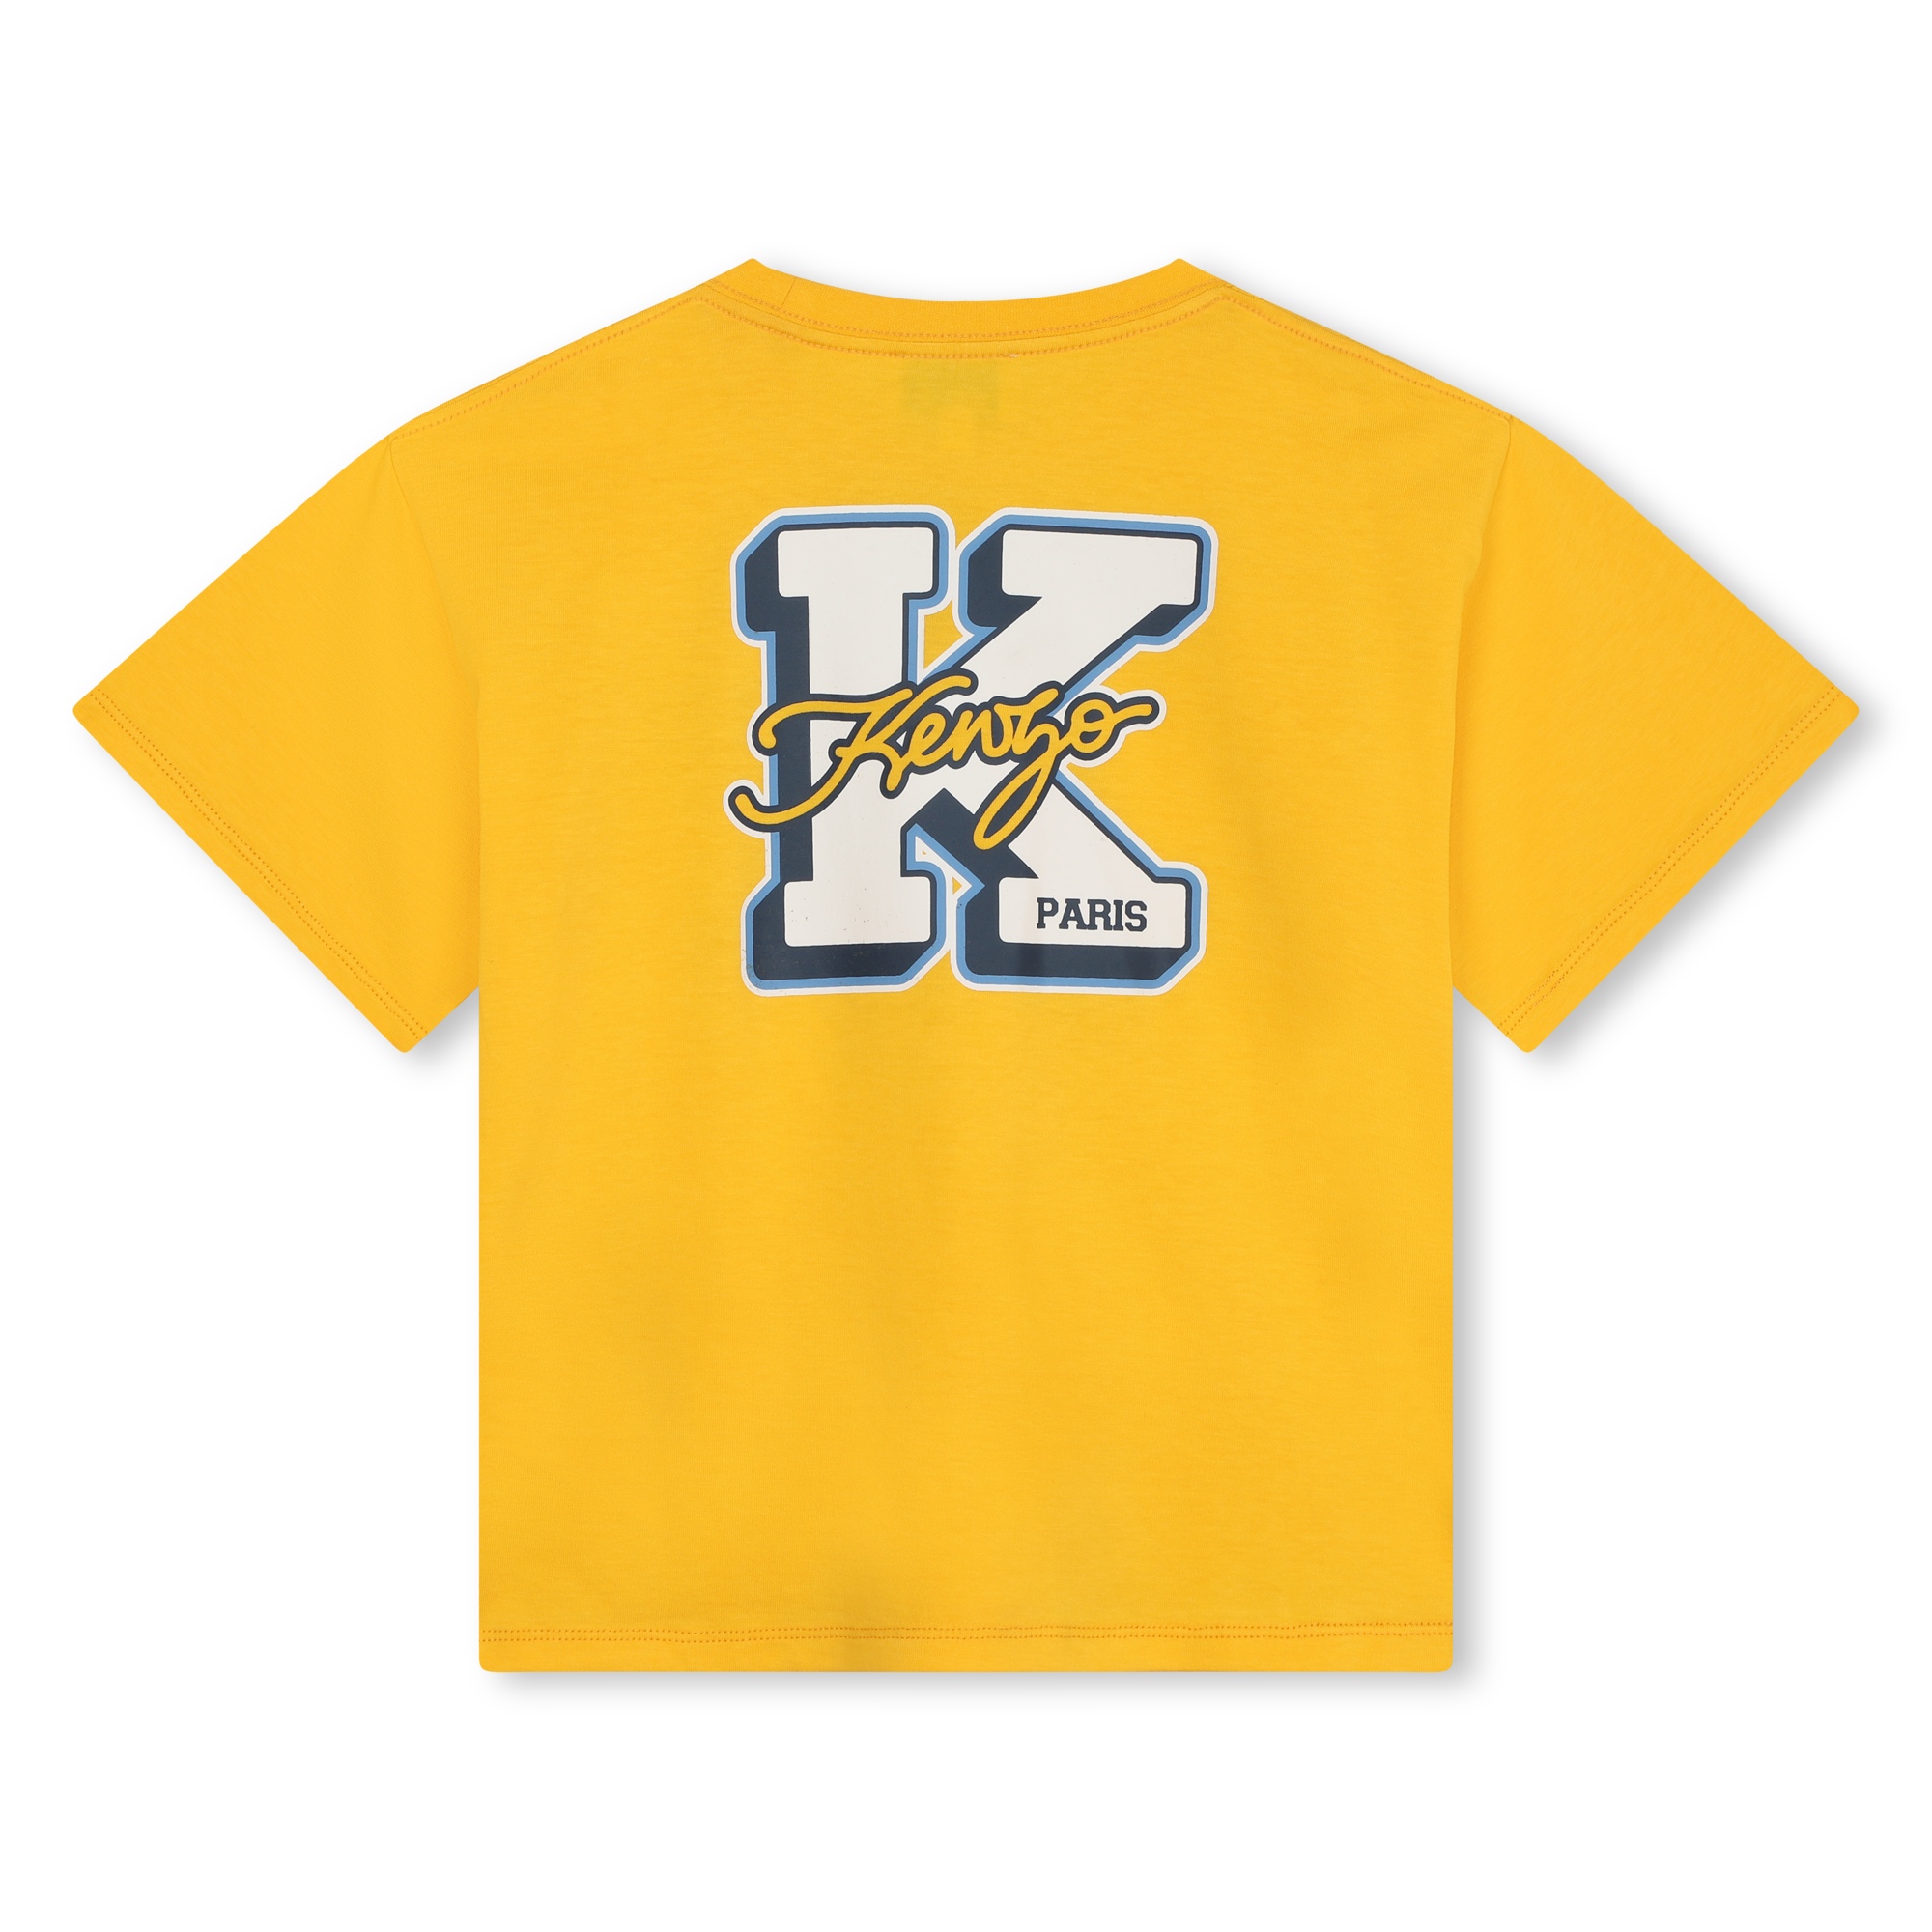 Baumwoll-T-Shirt mit Print KENZO KIDS Für JUNGE